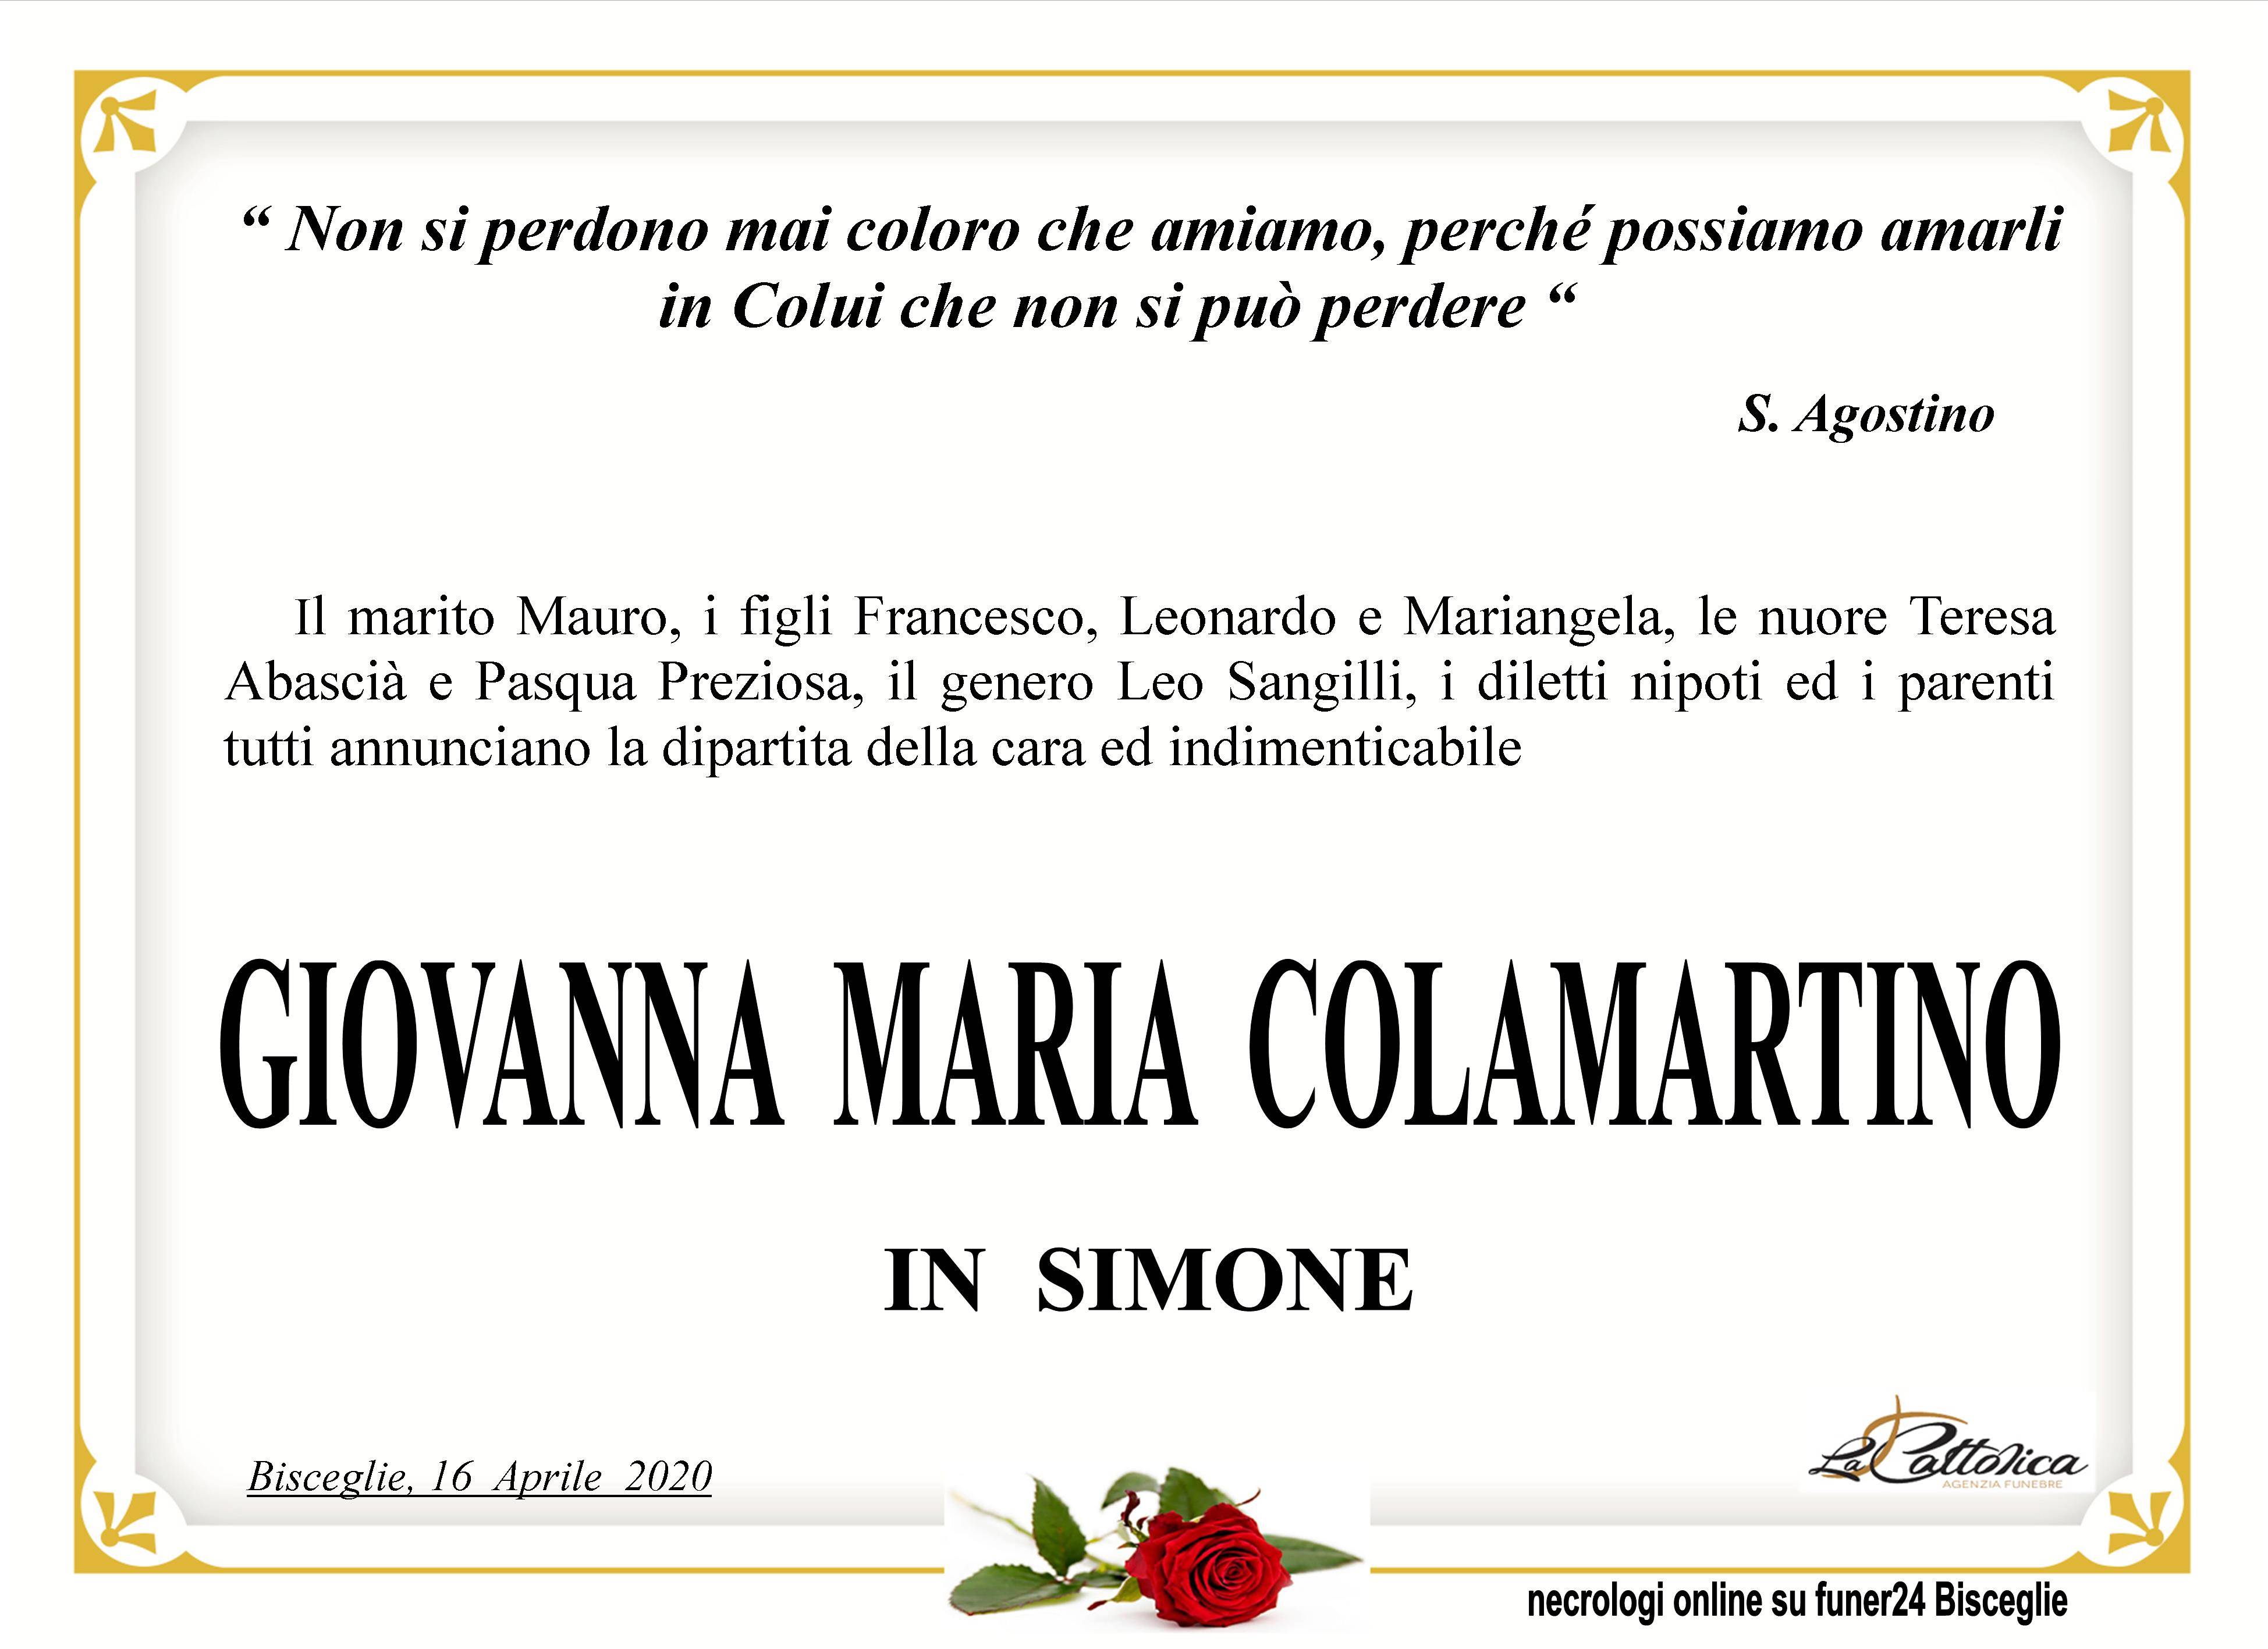 Giovanna Maria Colamartino